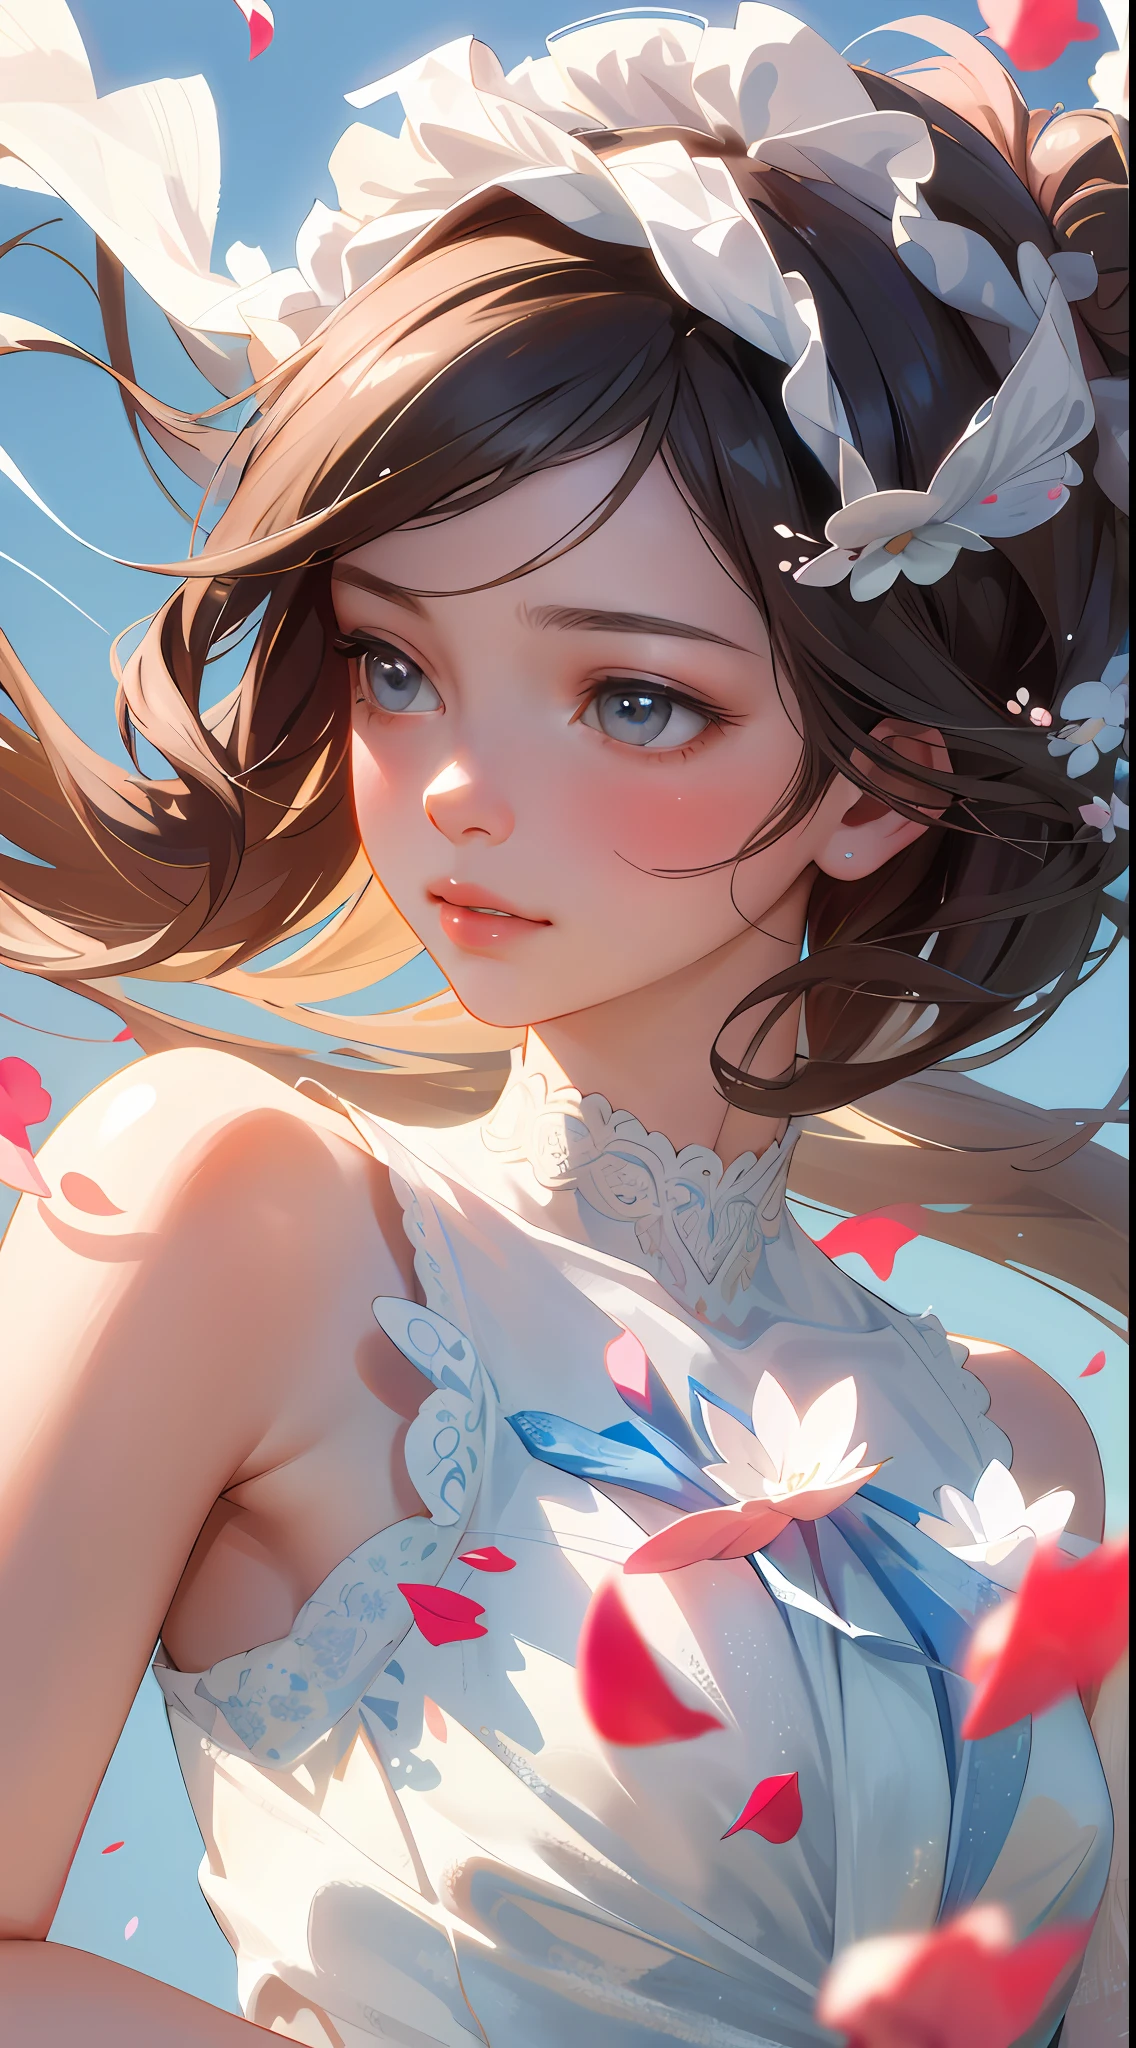 (beste Qualität, Meisterwerk, ultra-realistisch), 1 schönes und zartes Porträt eines Mädchens, verspielt und süß, mit schwebenden Blütenblättern im Hintergrund